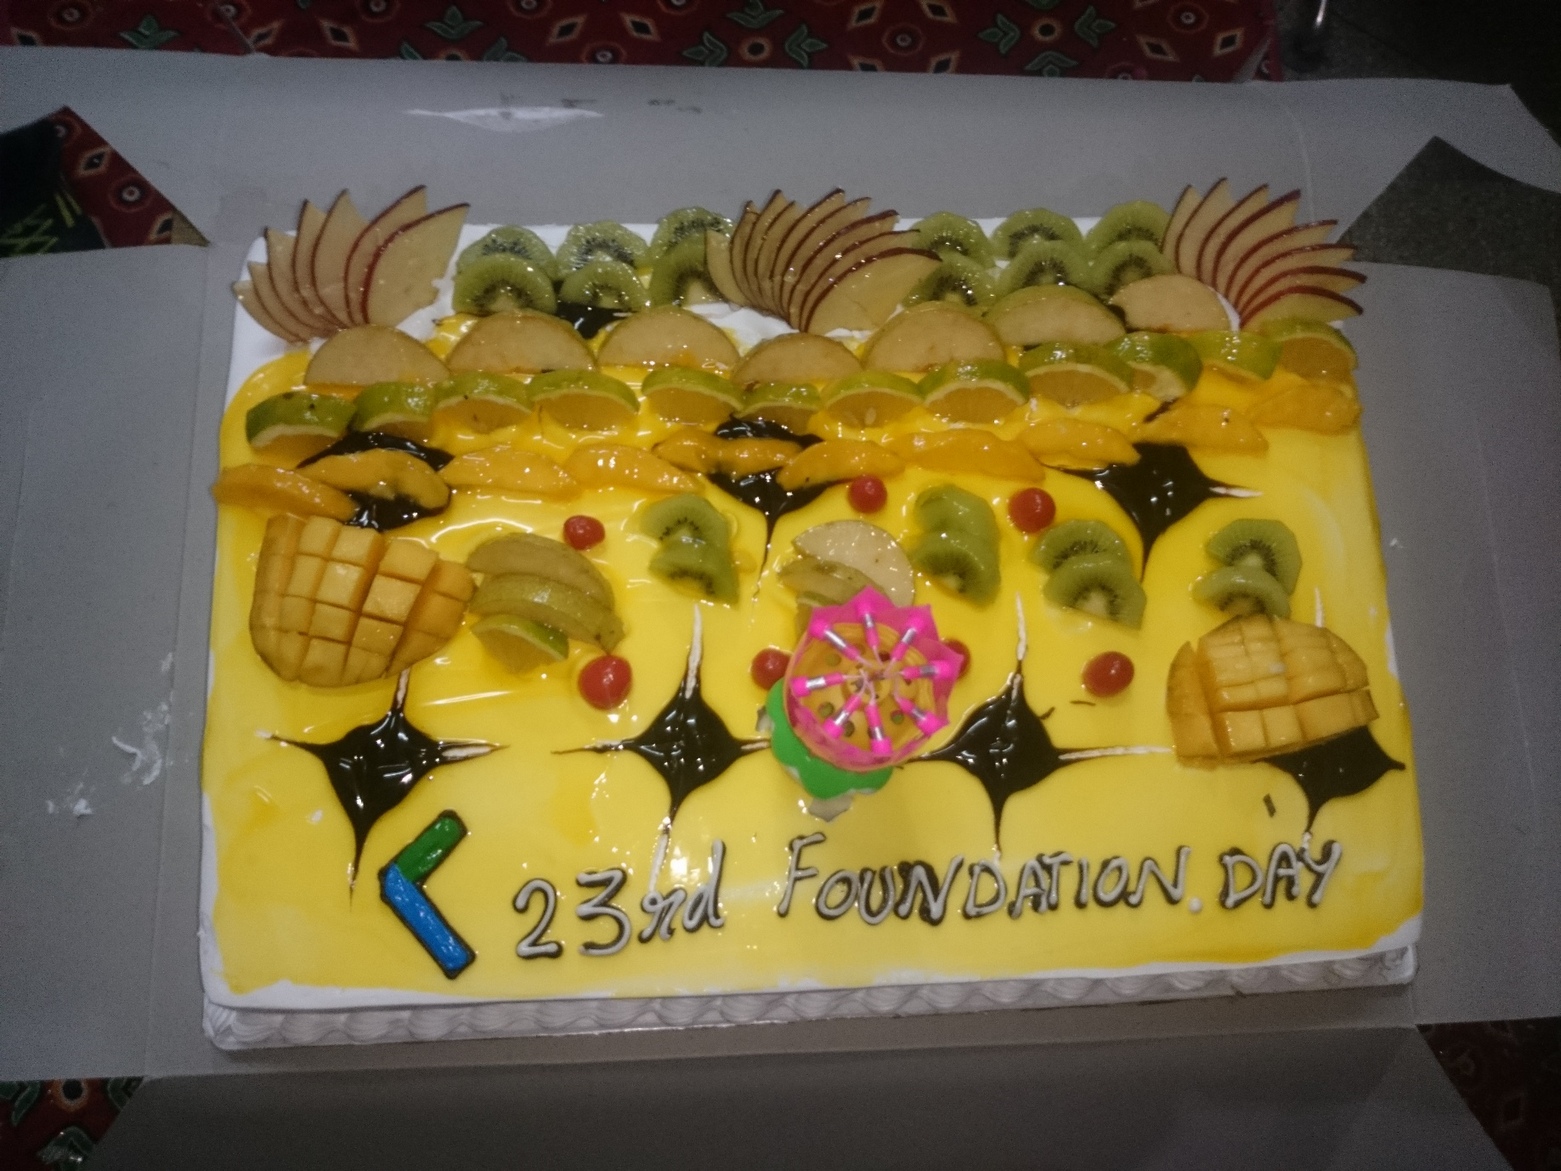 Celebration of 23rd Foundation Day